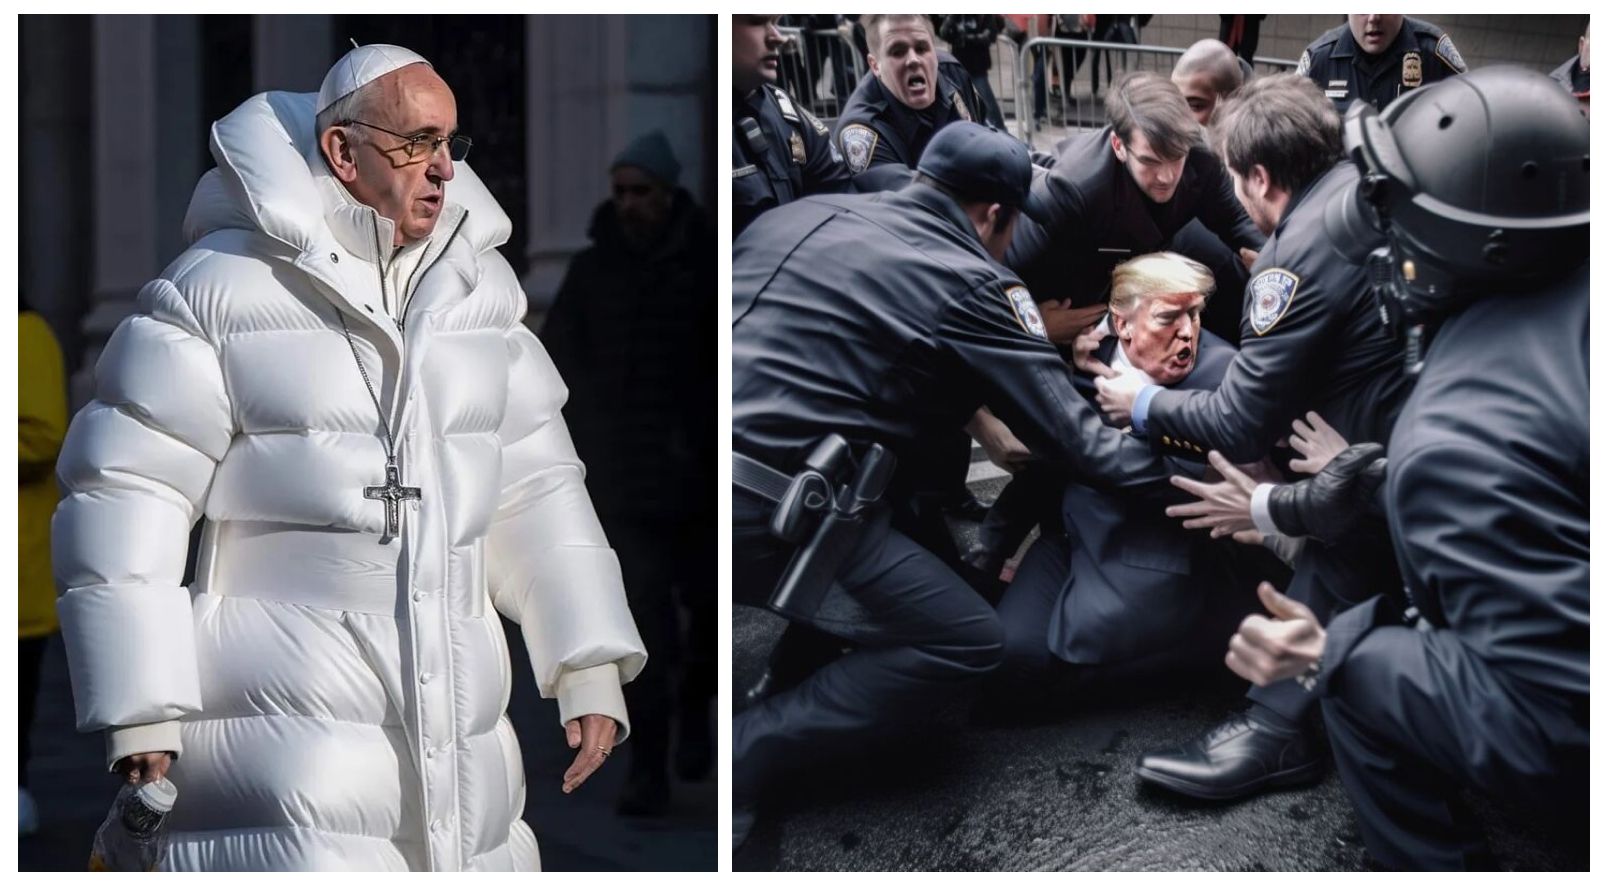 El Papa Francisco con su abrigo Balenciaga y Donald Trump arrestado por el FBI. Imágenes generadas con Midjourney.